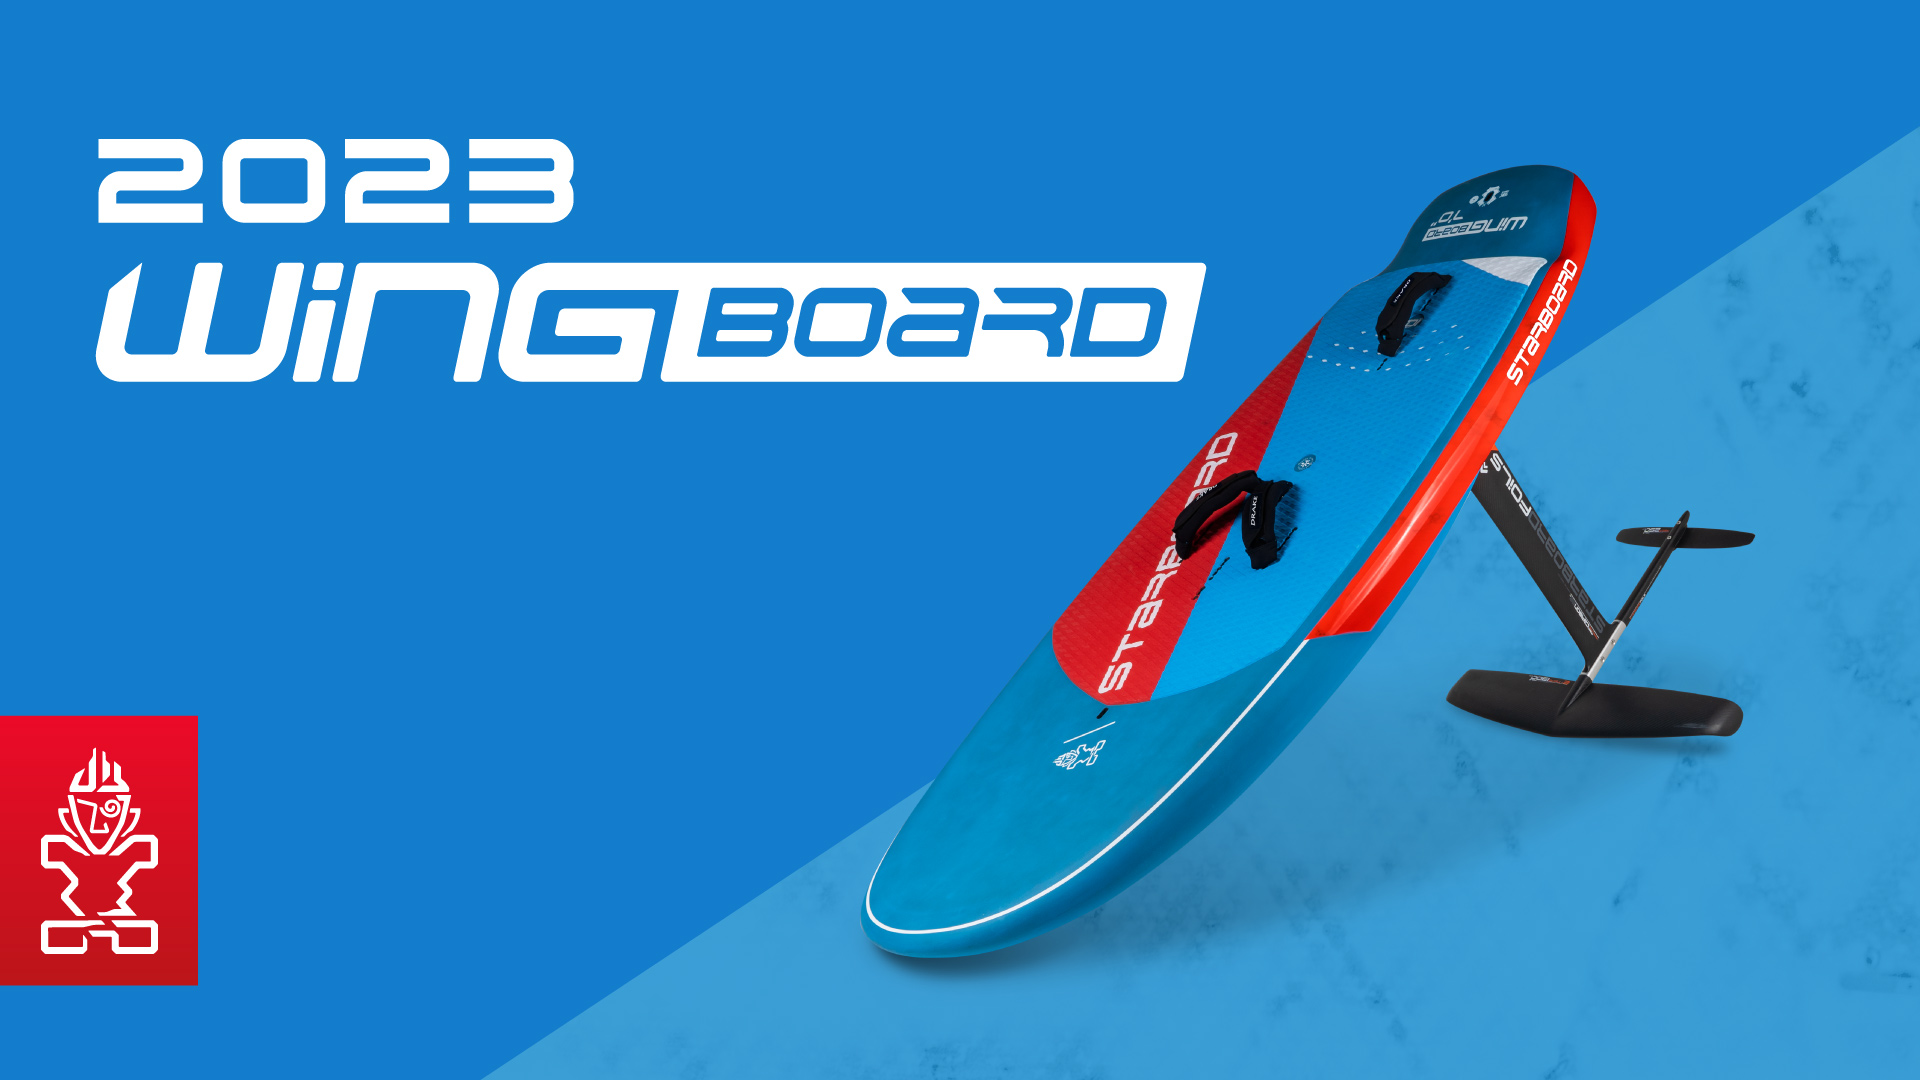 2023 Wingboard Foil – Starboard Wingboard